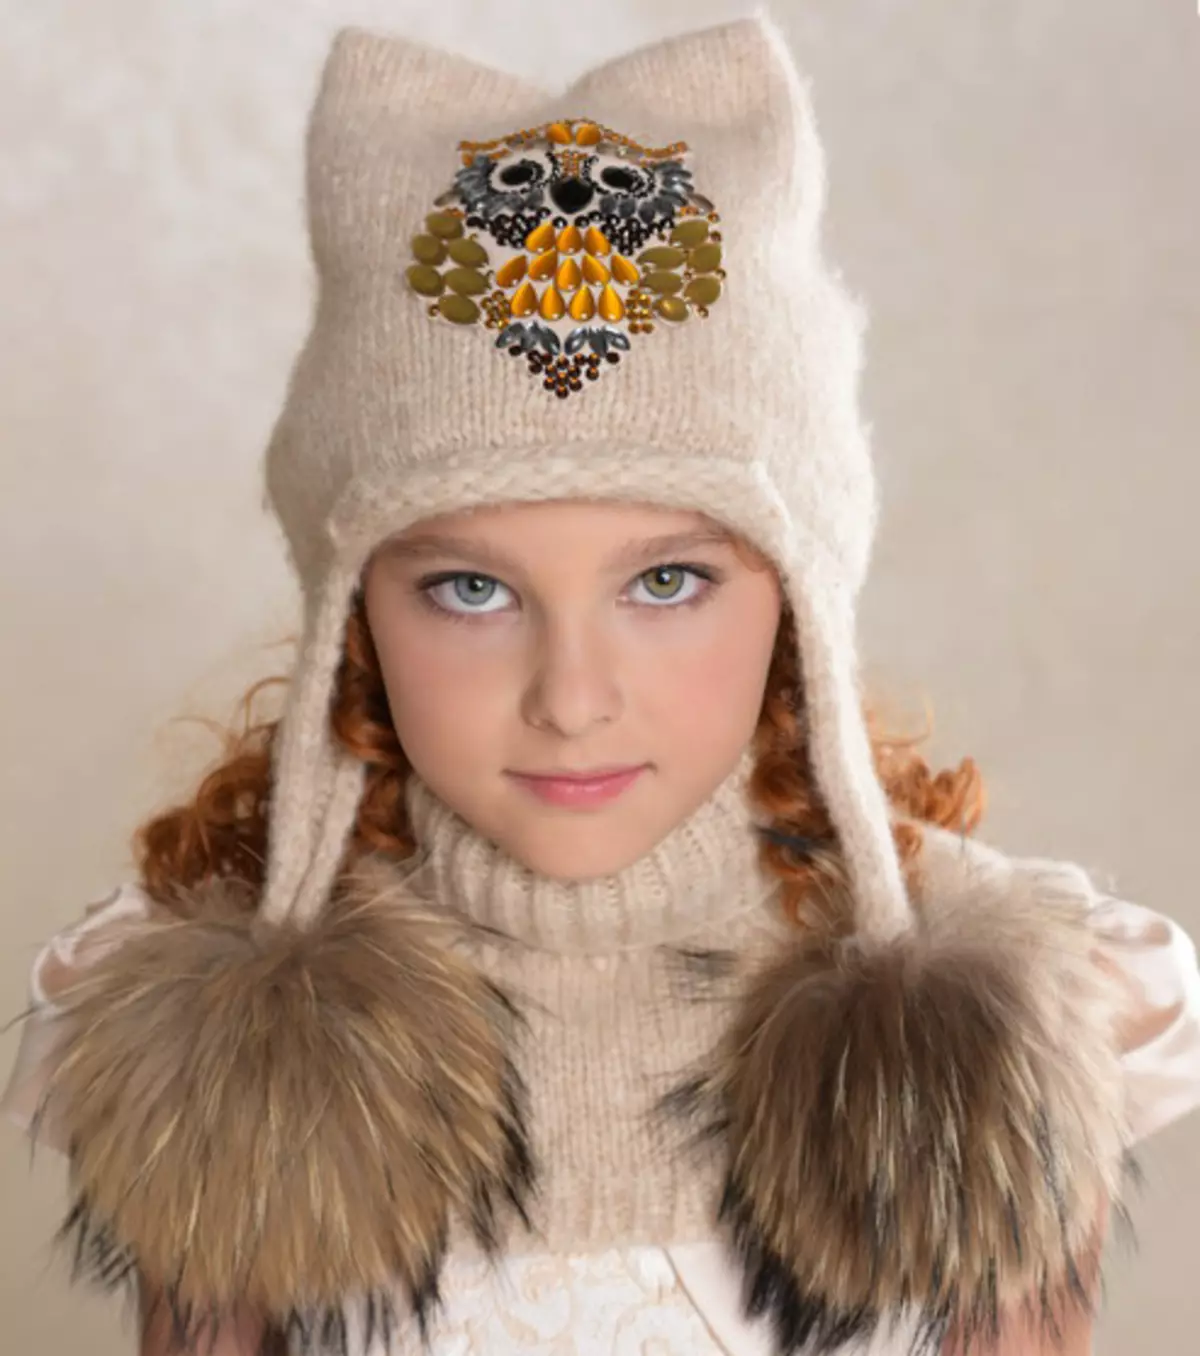 Knitted Caps for Girls (91 foto's): Foar adolesinten 12-14 jier âld en nijberne famke mei earen, waarme hoed-ushanka 13615_48